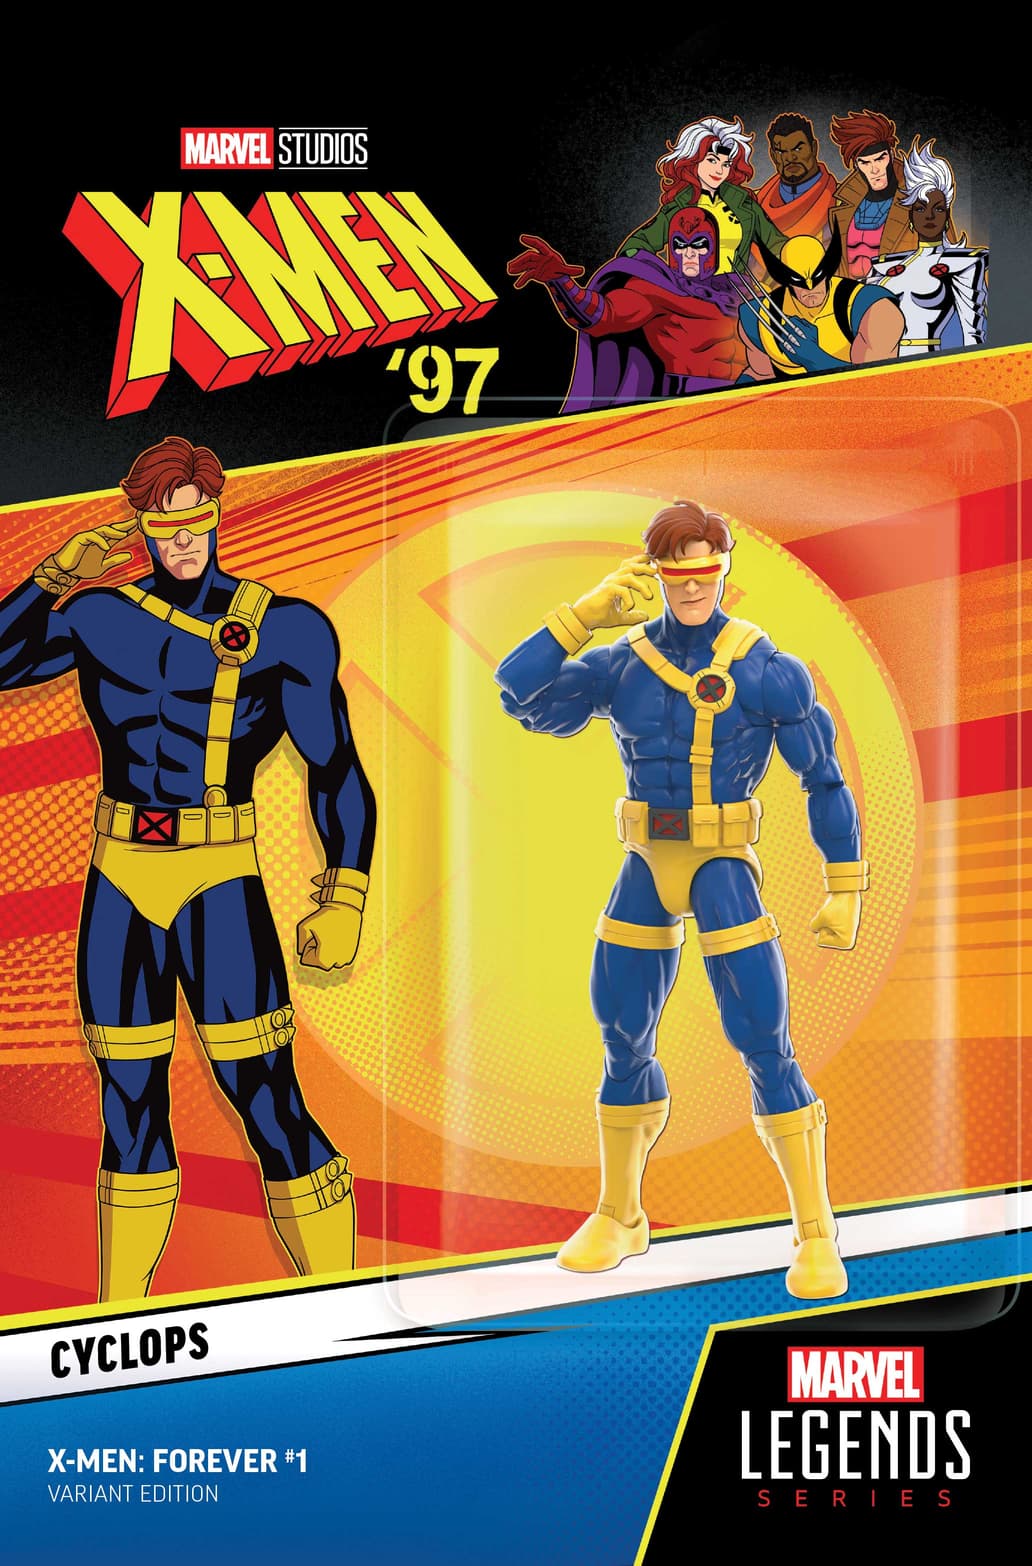 X-MEN: FOREVER #1 X-Men ’97 Action Figure Variant Cover